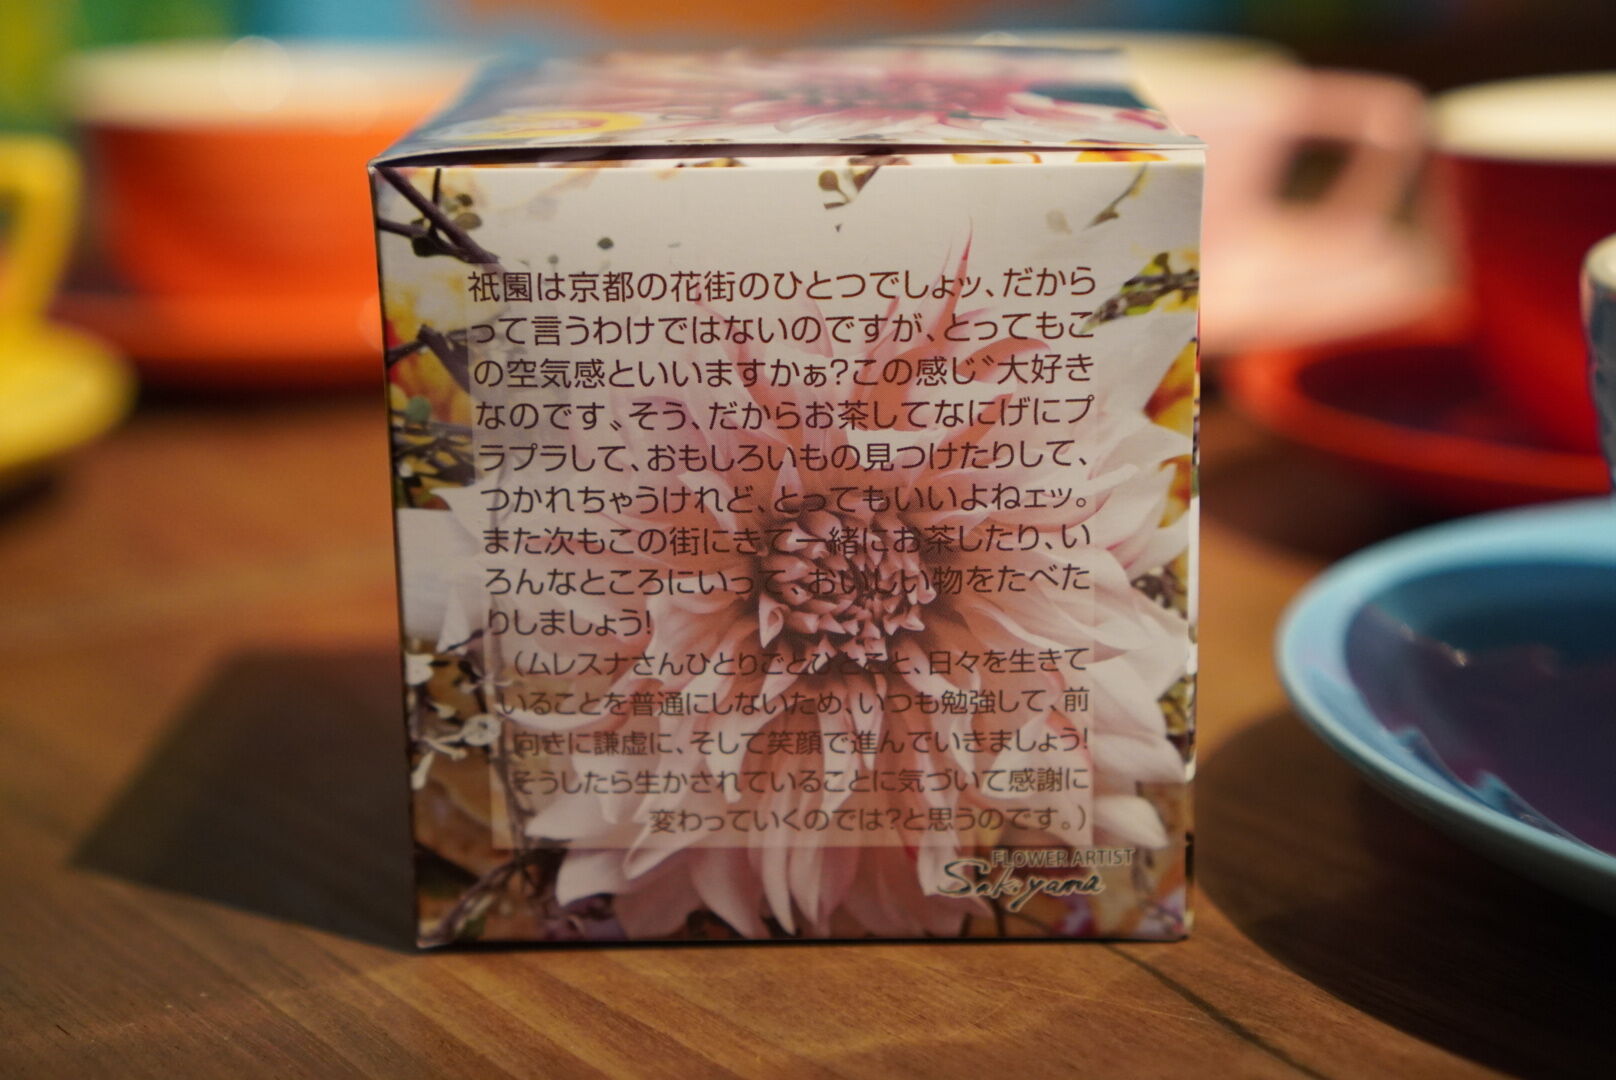 紅茶 ムレスナティー 京都祇園の香り お京都でお茶しましょう･･･のおいしい紅茶